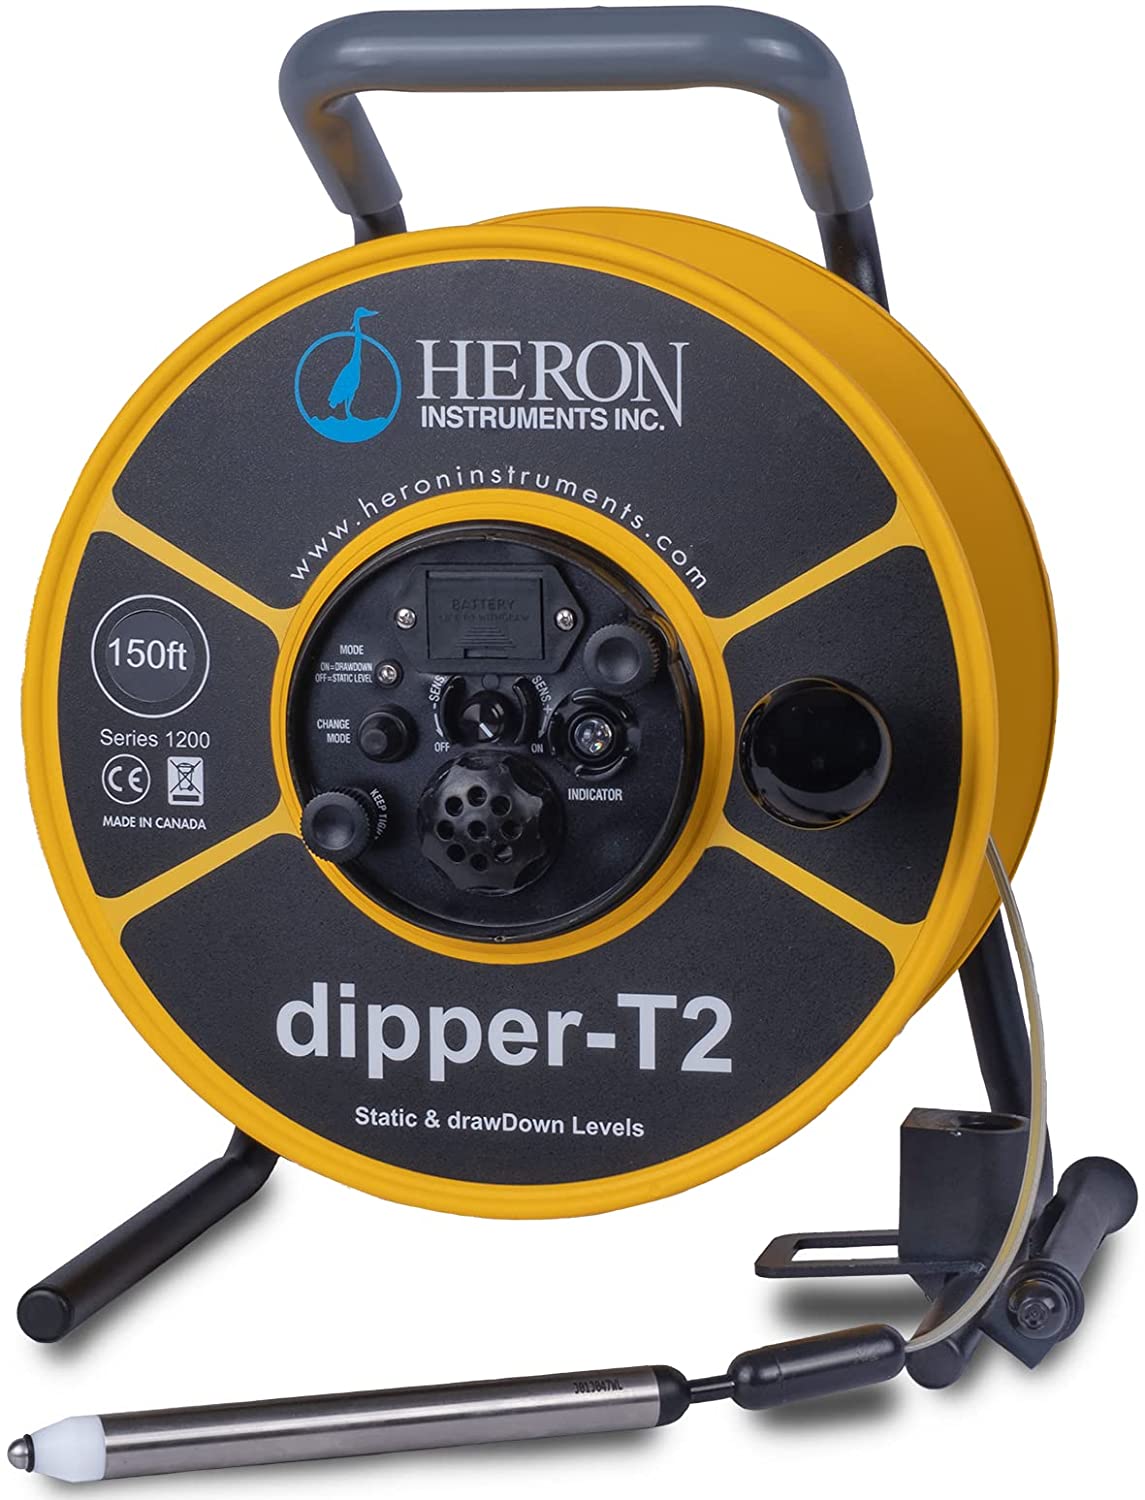 Heron dipper-T2